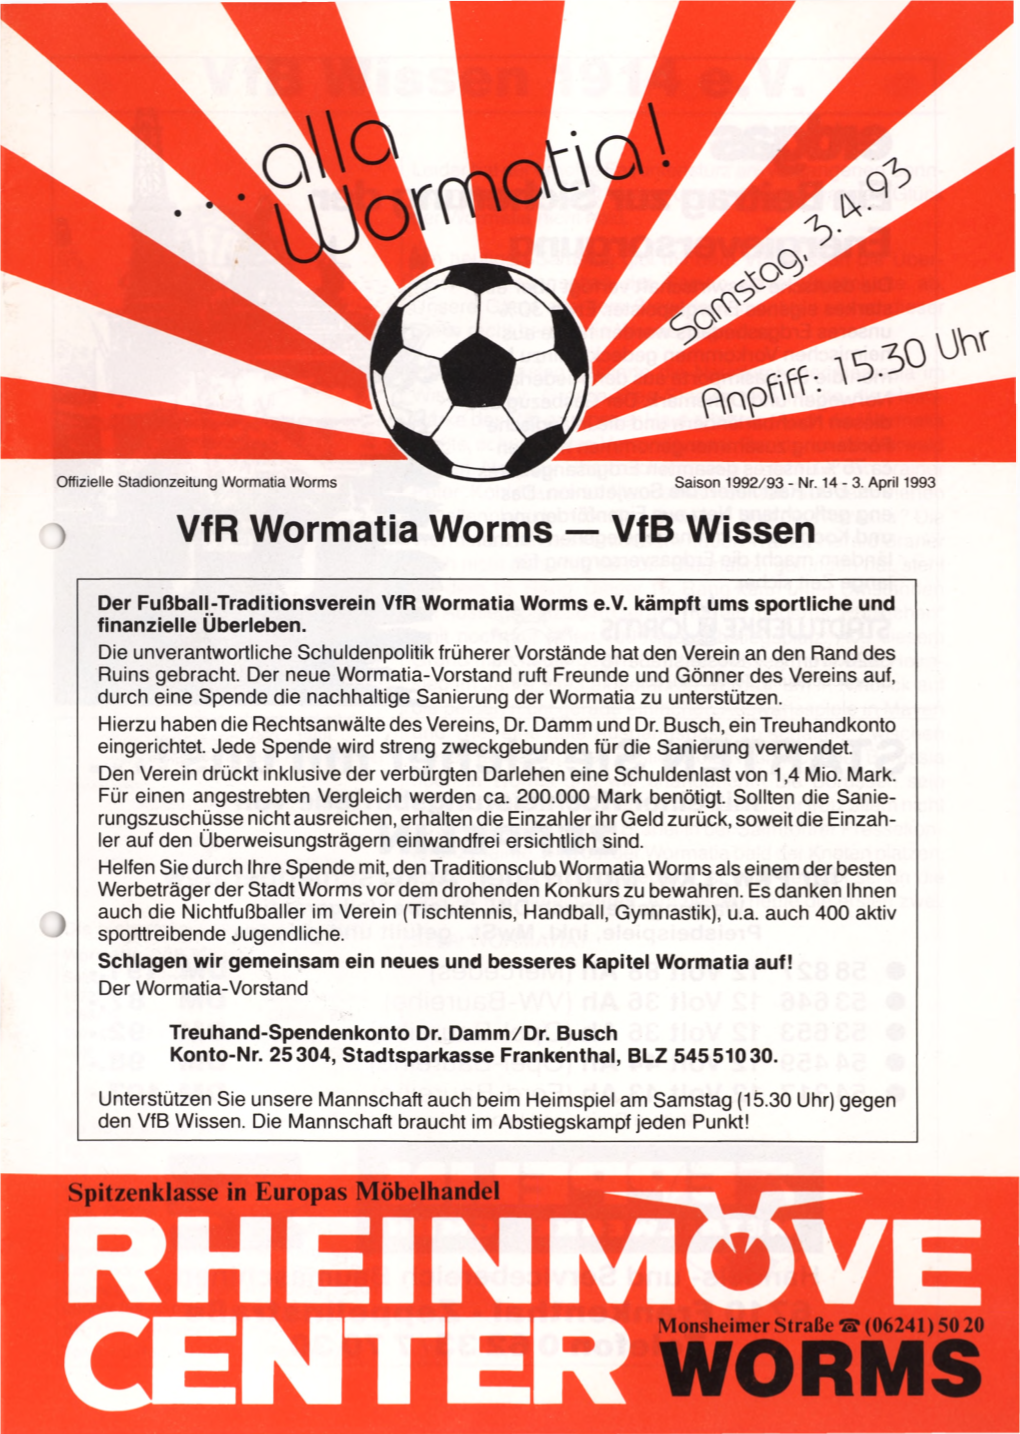 Vfr Wormatia Worms — Vfb Wissen